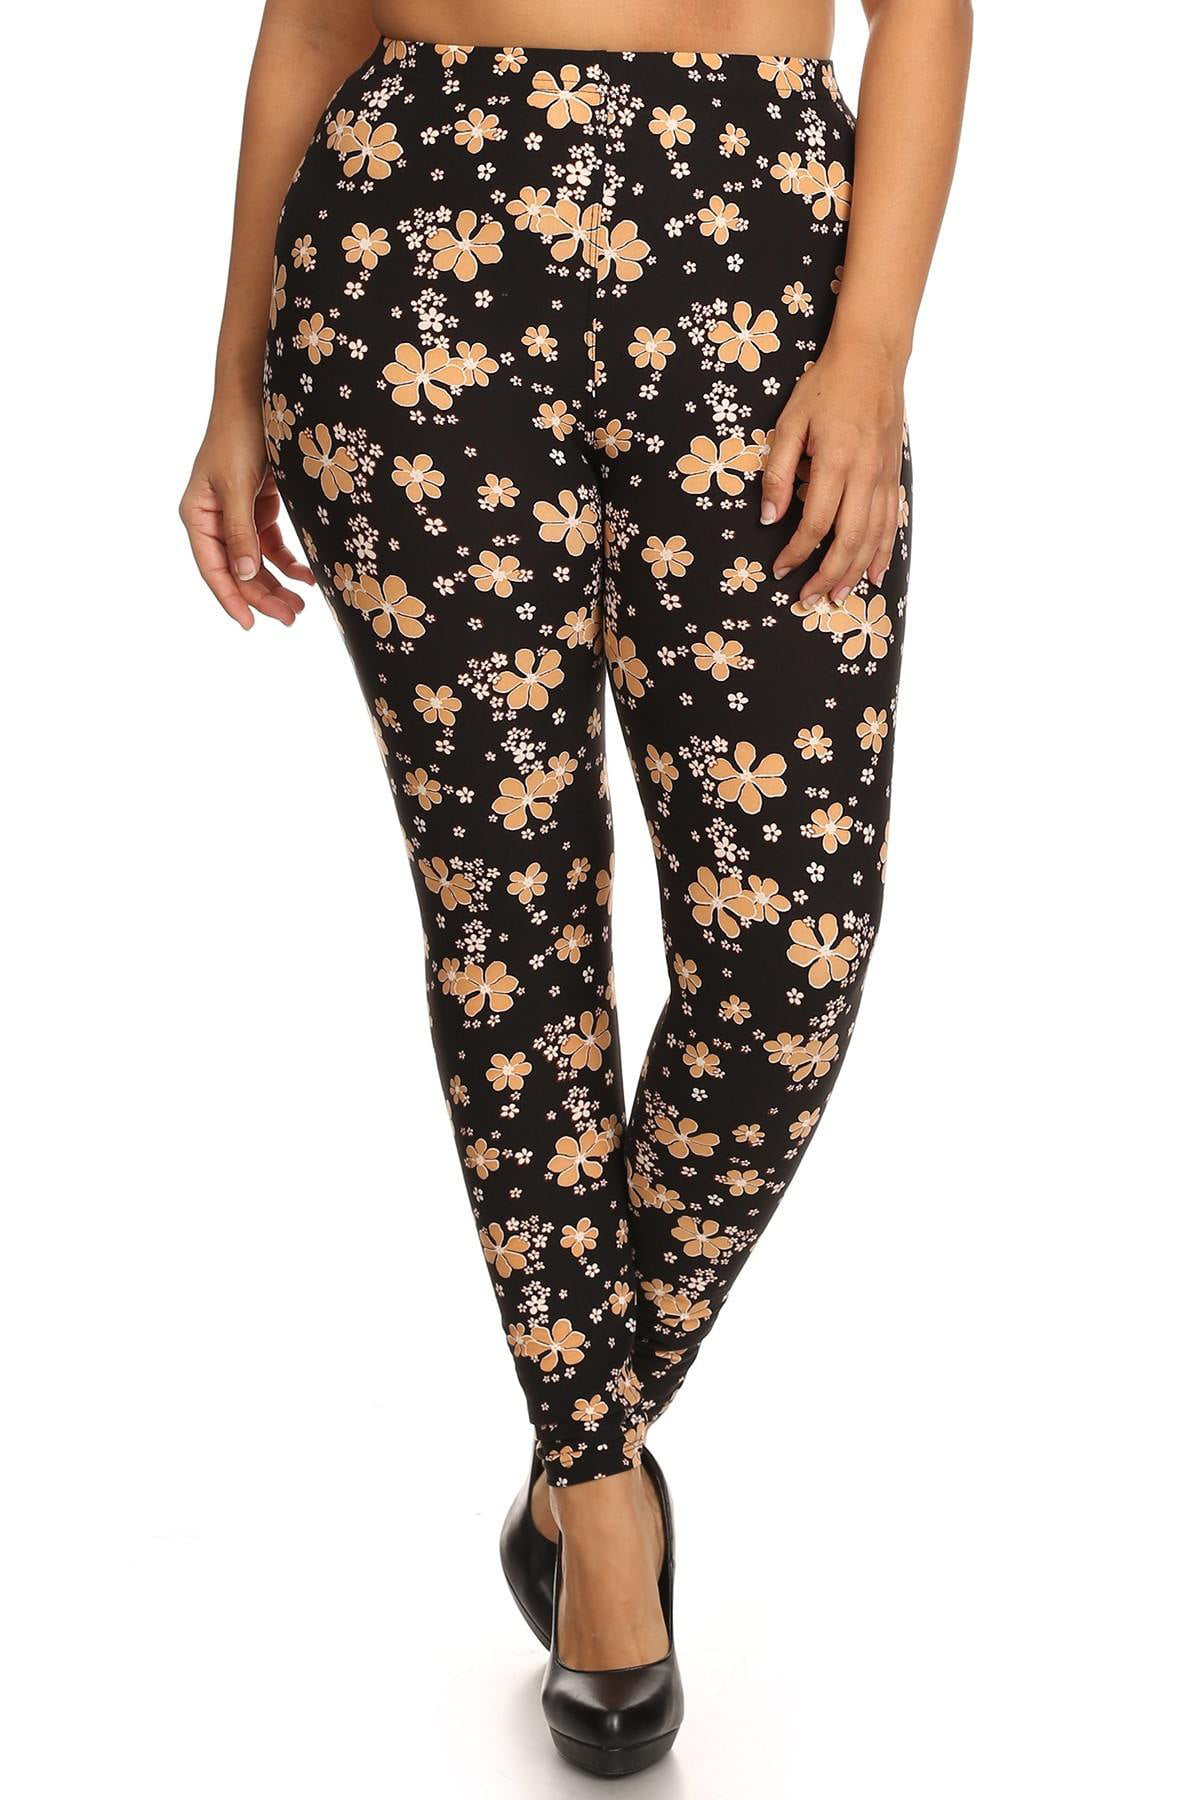 Super Soft Peach Skin Fabric, Floral Graphic Legging W/ Elastic Waist  Detail. High Waist Fit - Walmart.com